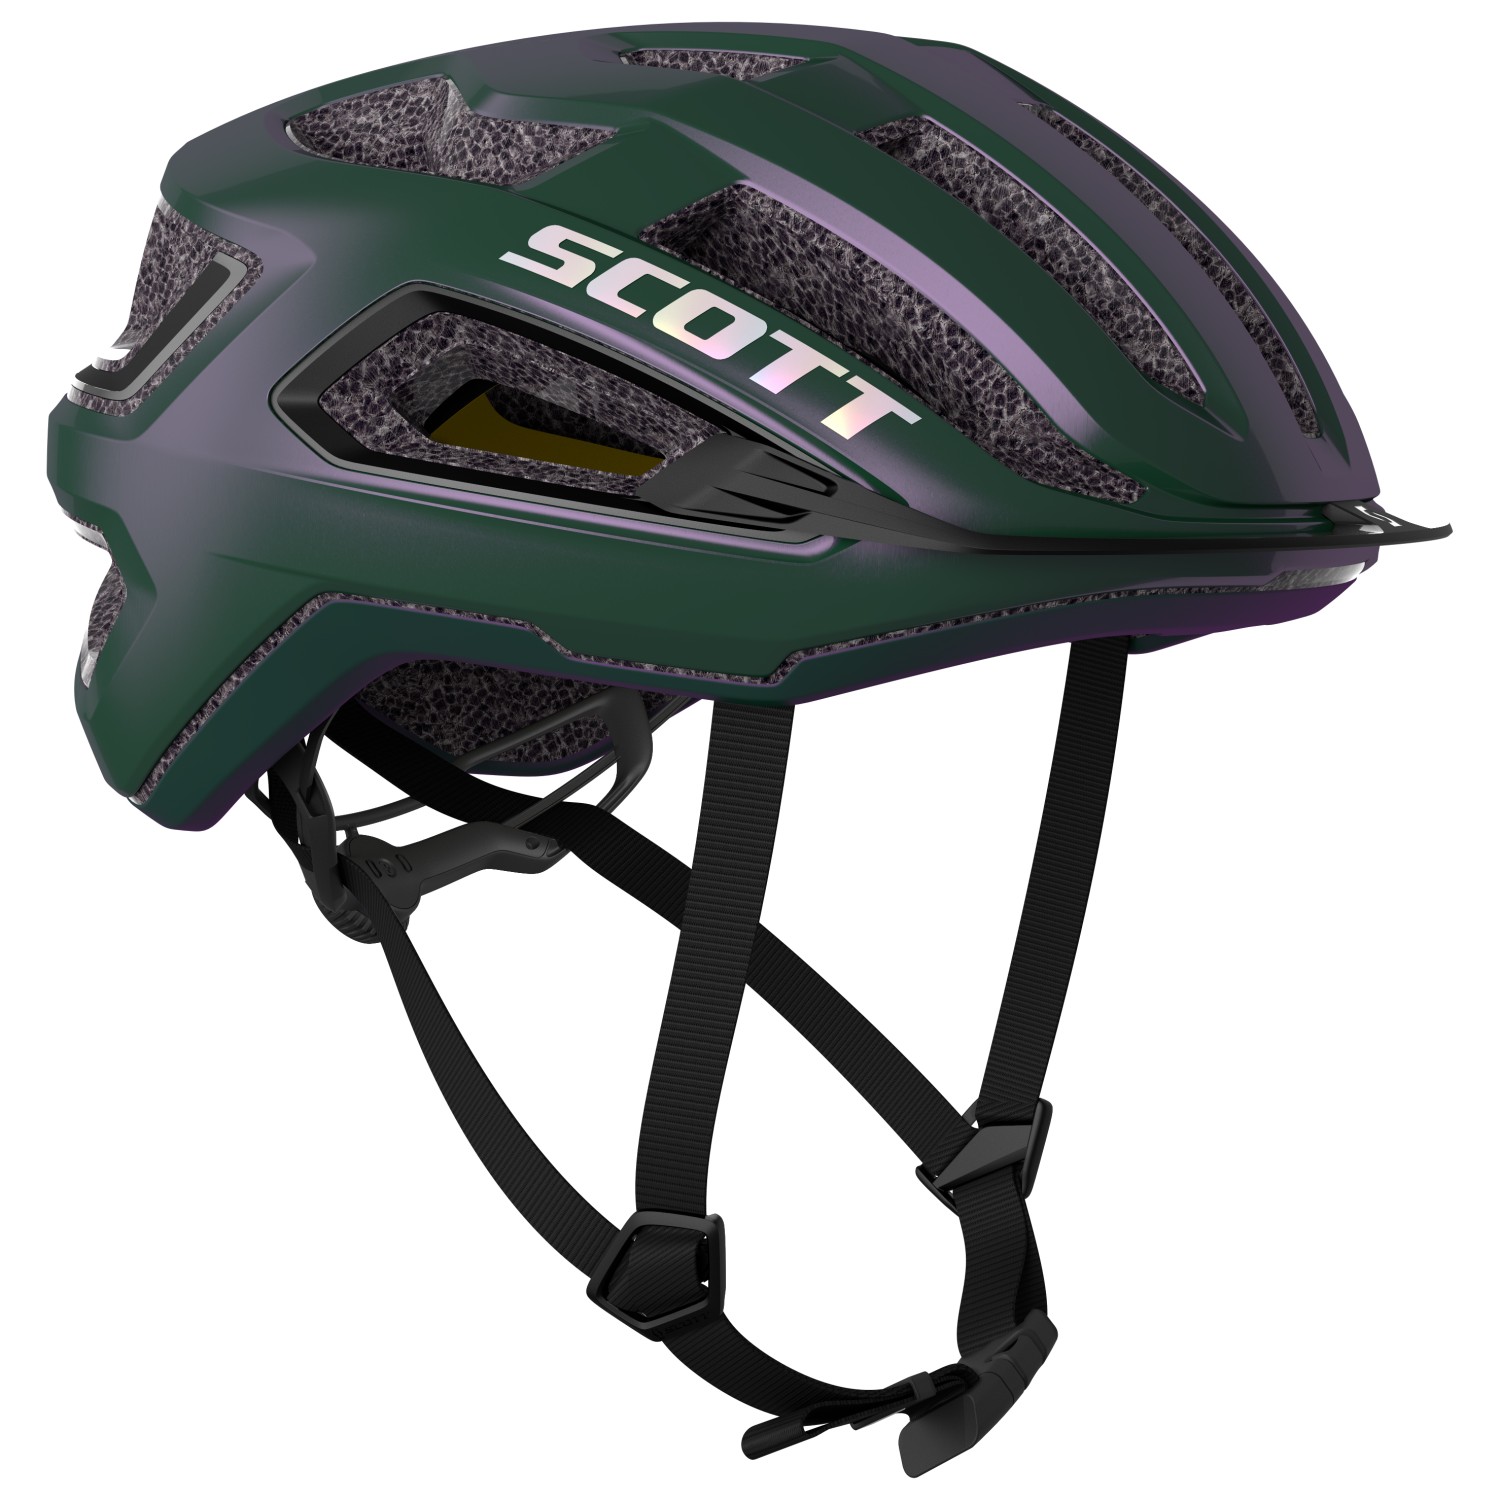 Велосипедный шлем Scott Helmet Arx Plus (CE), цвет Prism Green/Purple шлем scott supra ce серый один размер 54 61см